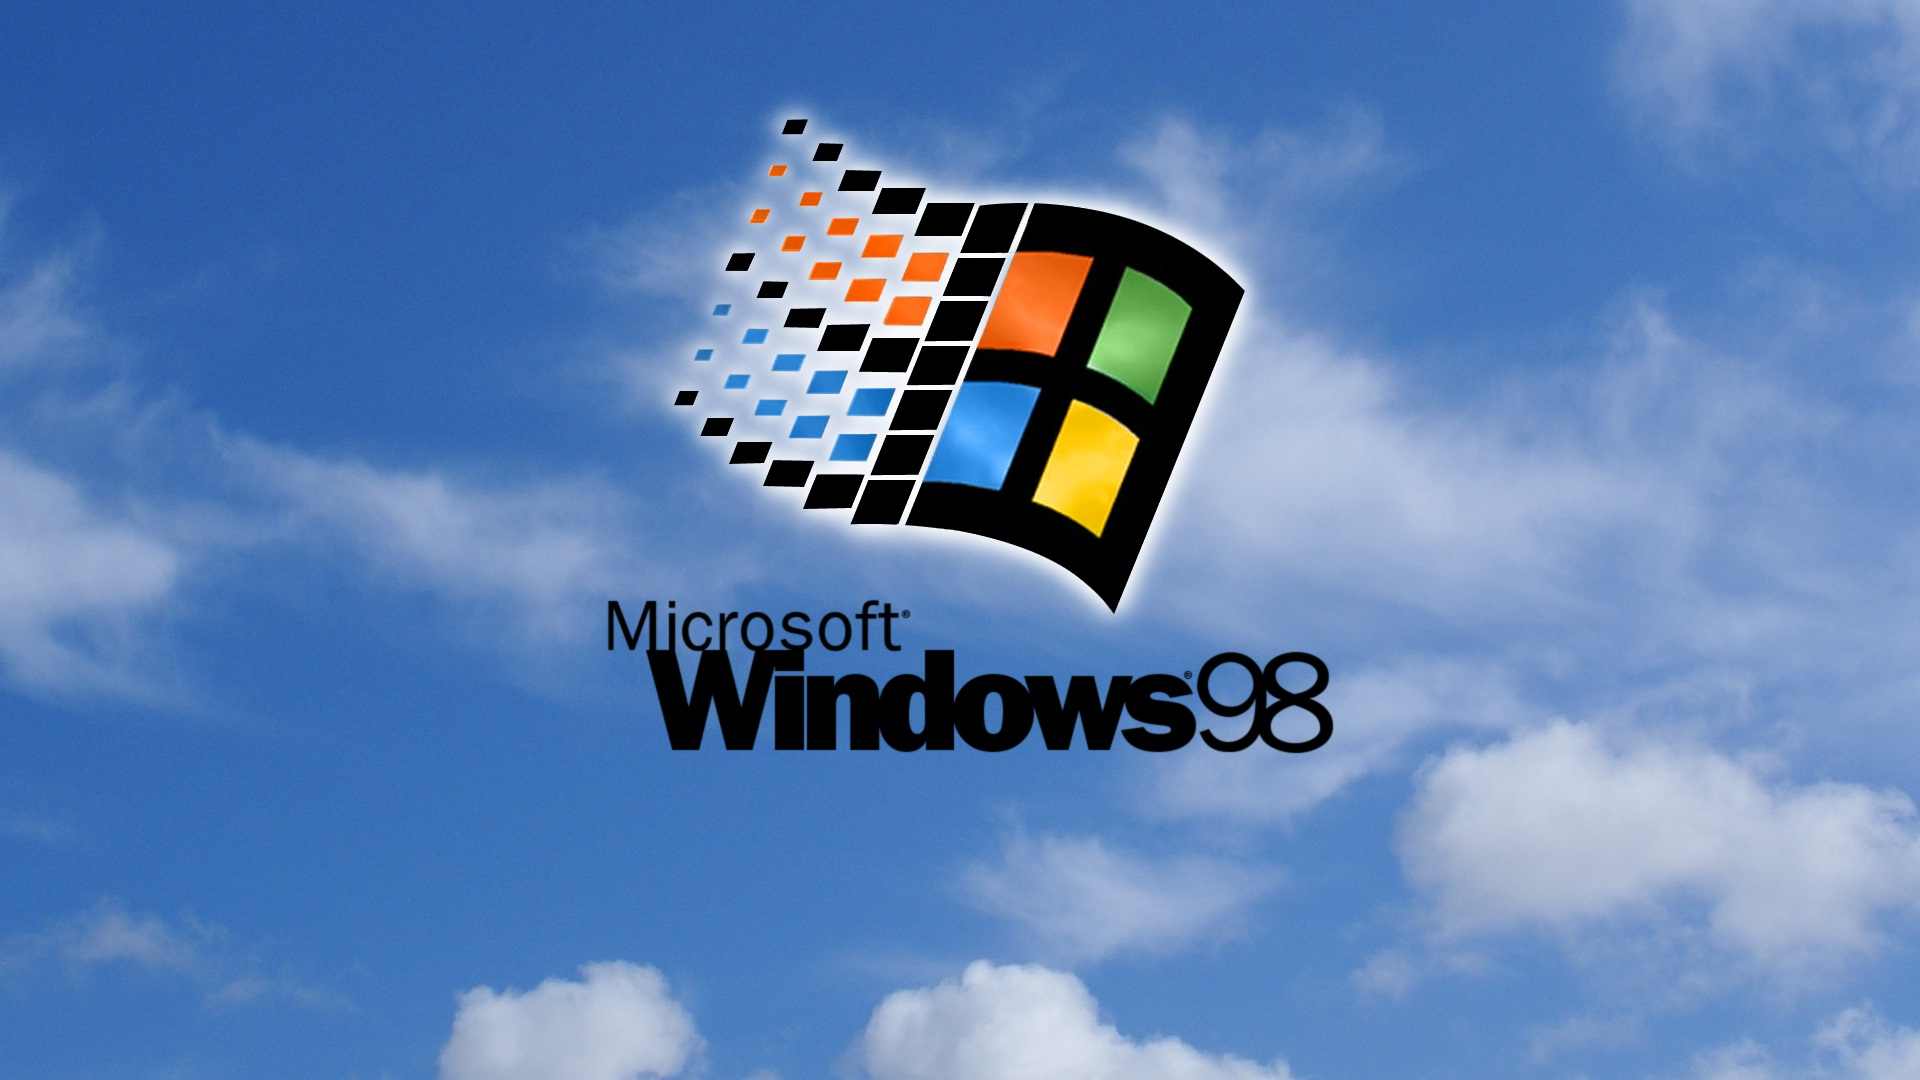 Windows 98 HD Wallpaper 1920x1080